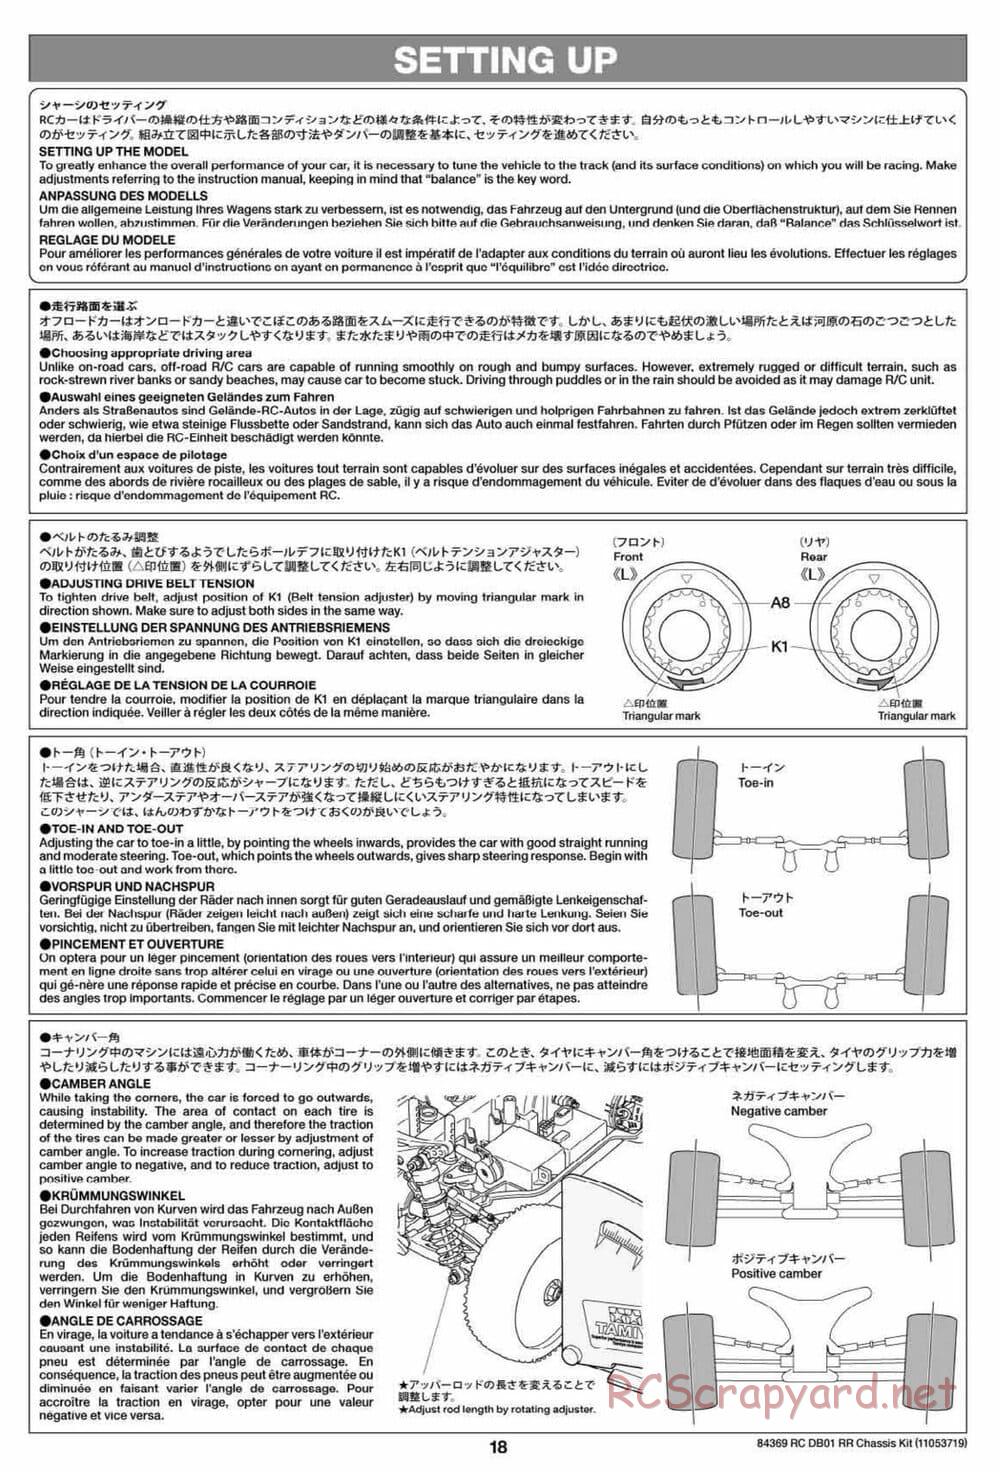 Tamiya - DB-01 RR Chassis - Manual - Page 18